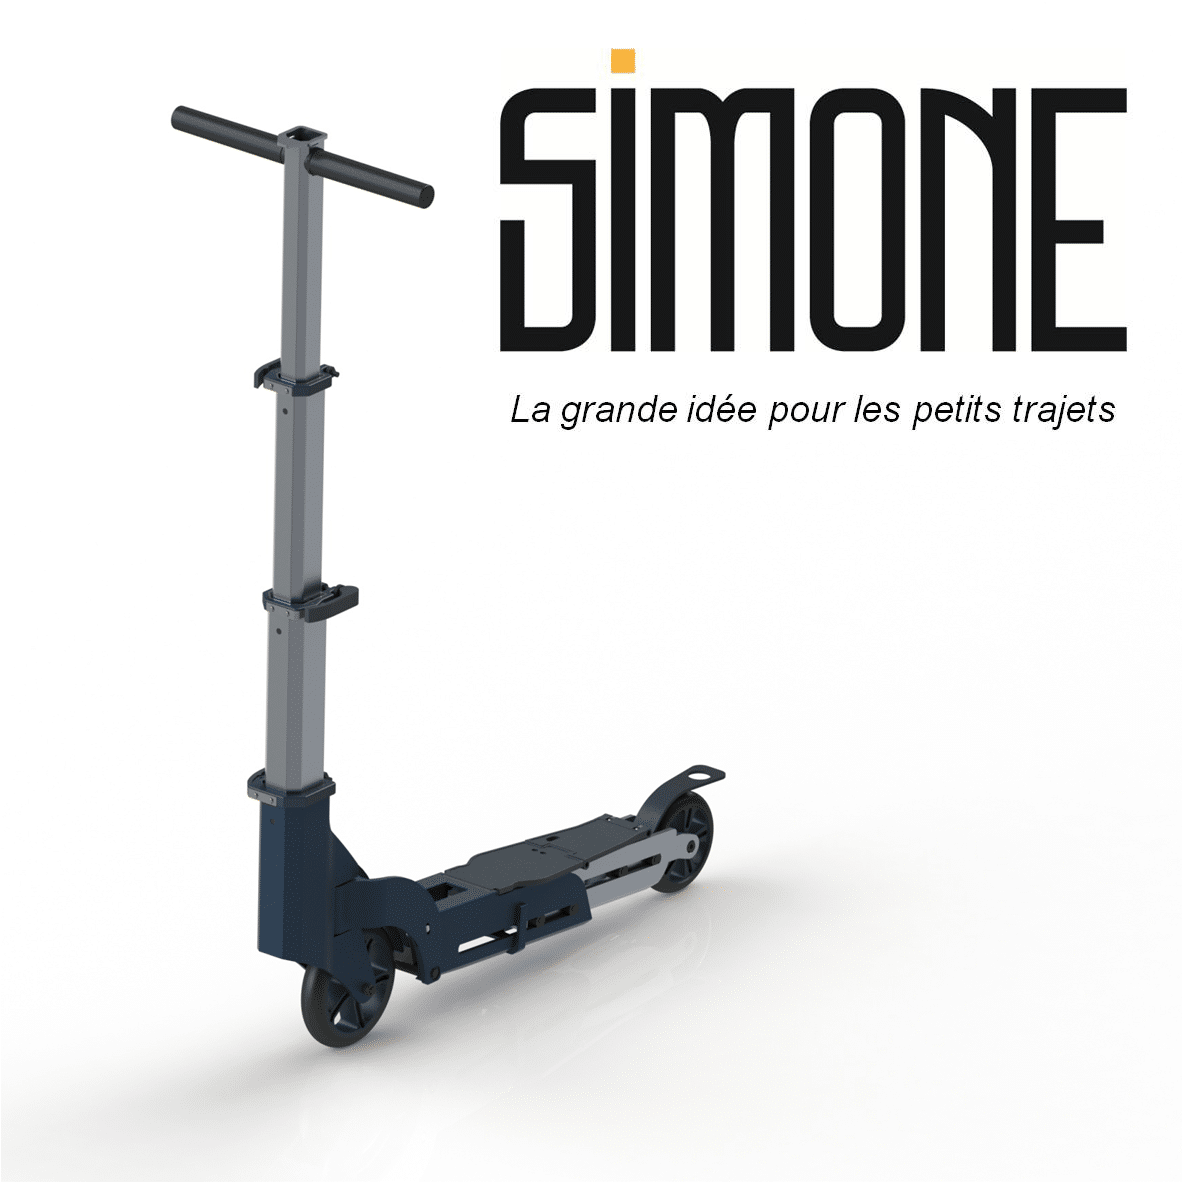 Trottinette ultra-compacte conçue pour les urbains - Simone